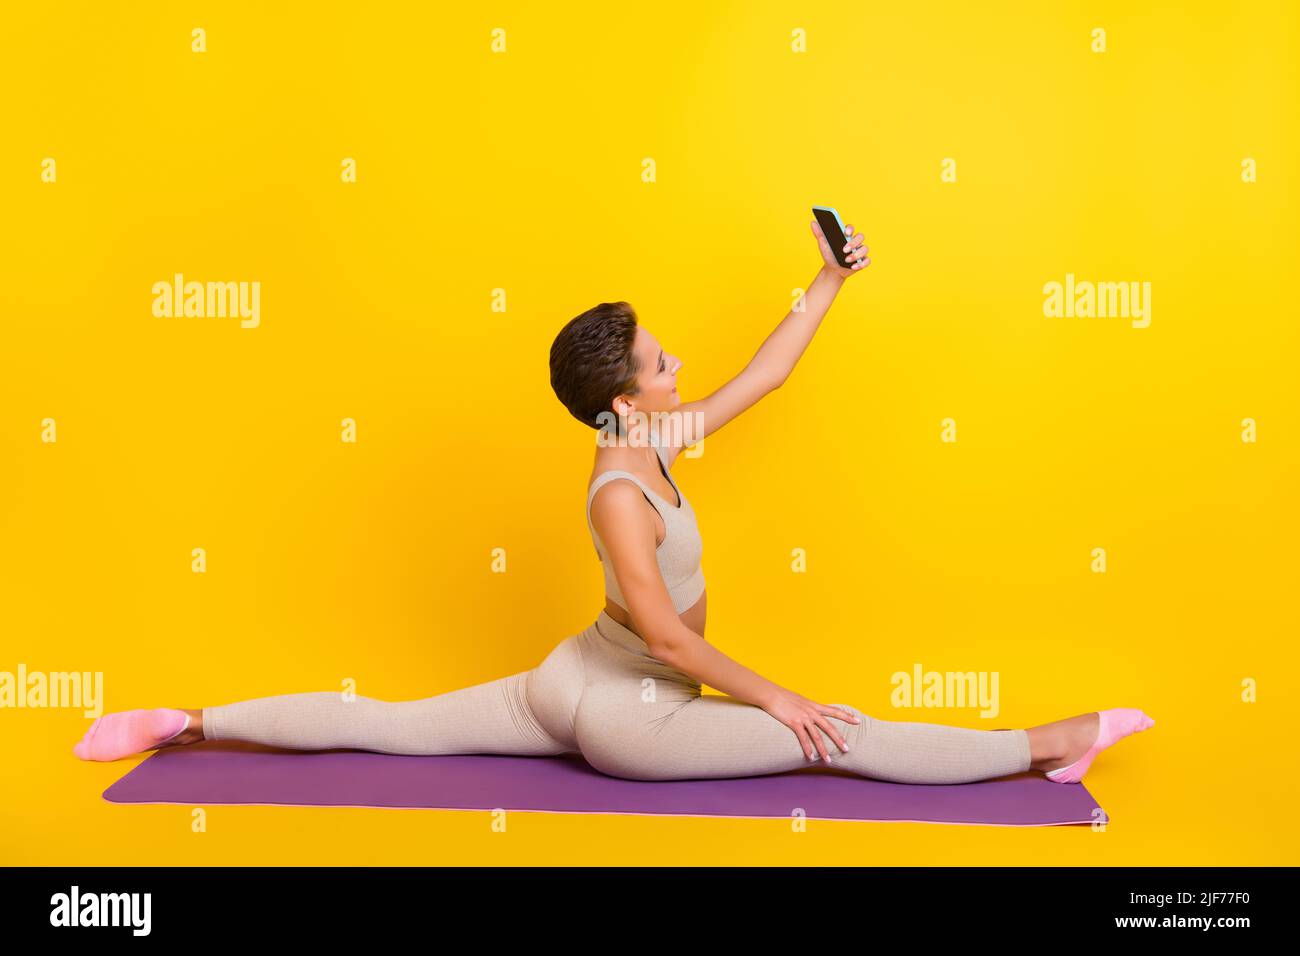 Profilo laterale ritratto di attraente ragazza seduta su tappeto allenarsi spago facendo selfie isolato su sfondo giallo brillante Foto Stock